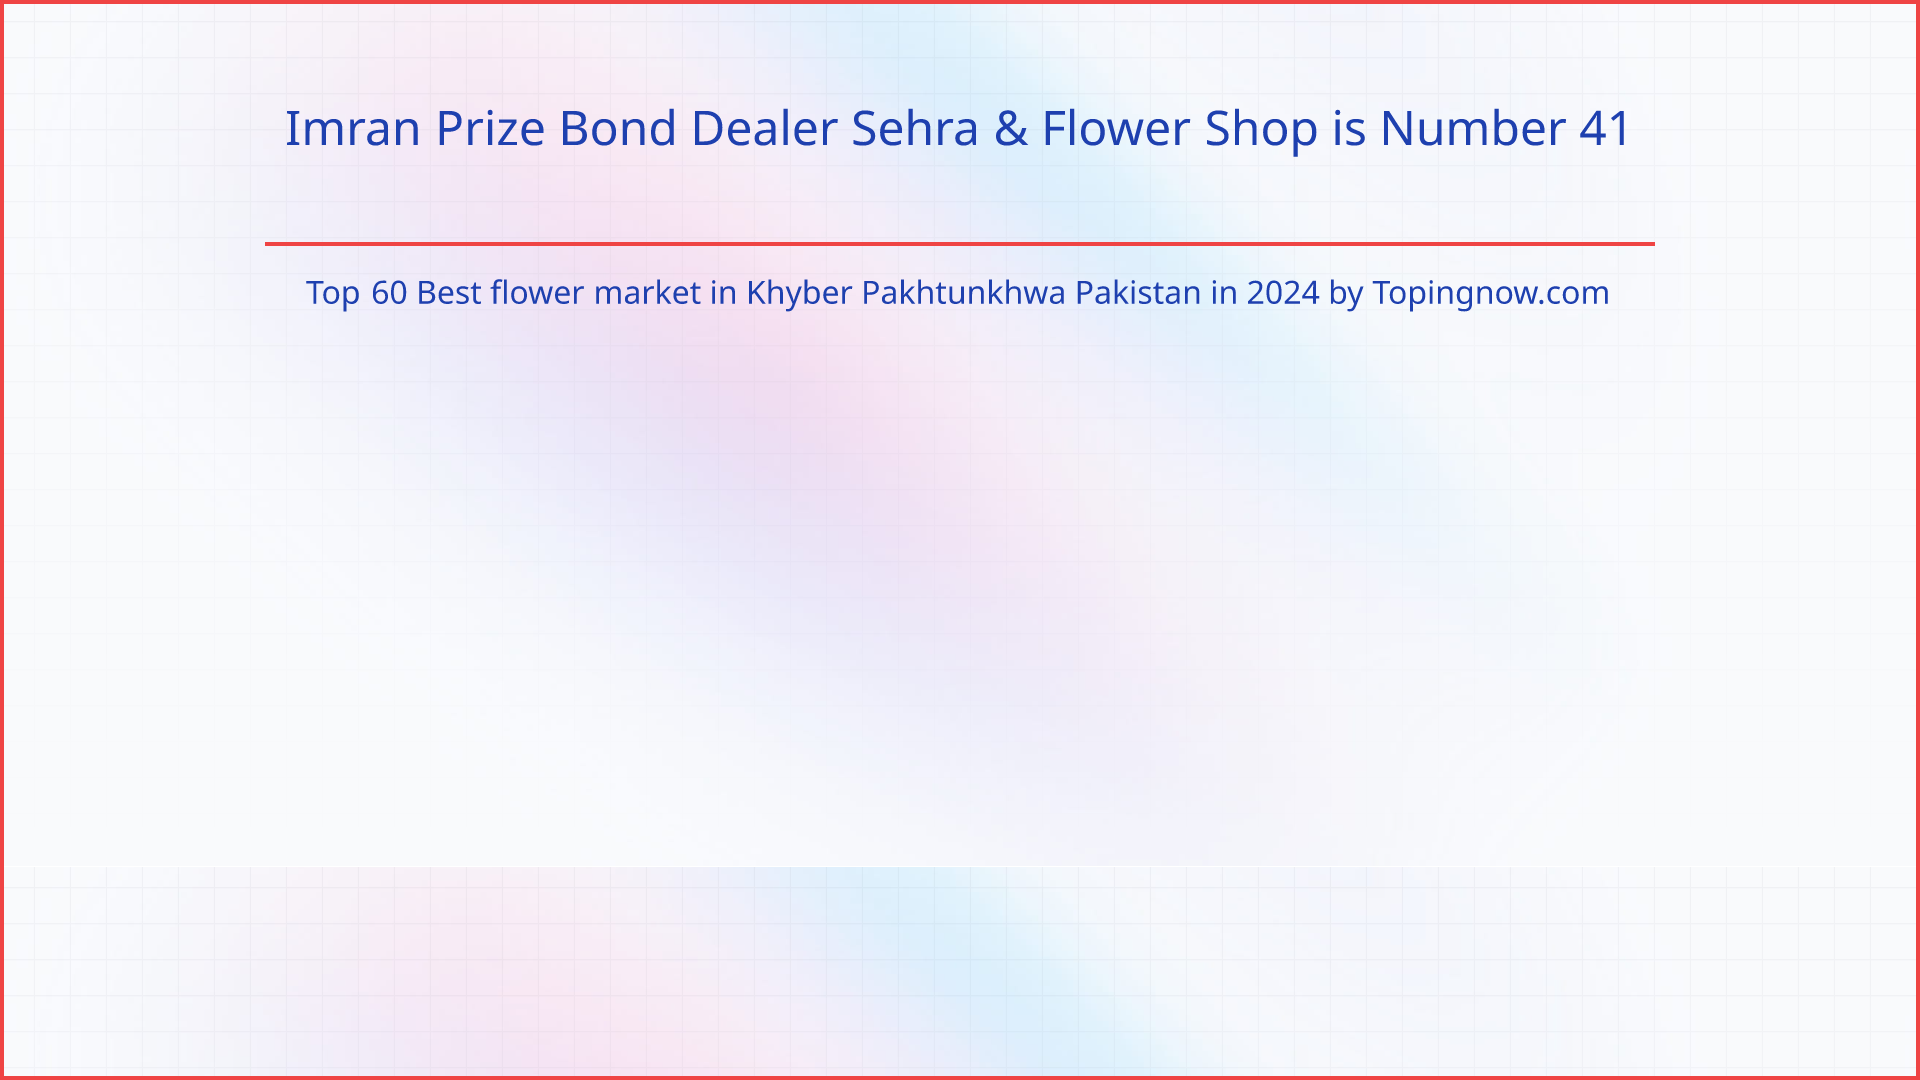 Imran Prize Bond Dealer Sehra & Flower Shop: Top 60 Best flower market in Khyber Pakhtunkhwa Pakistan in 2024